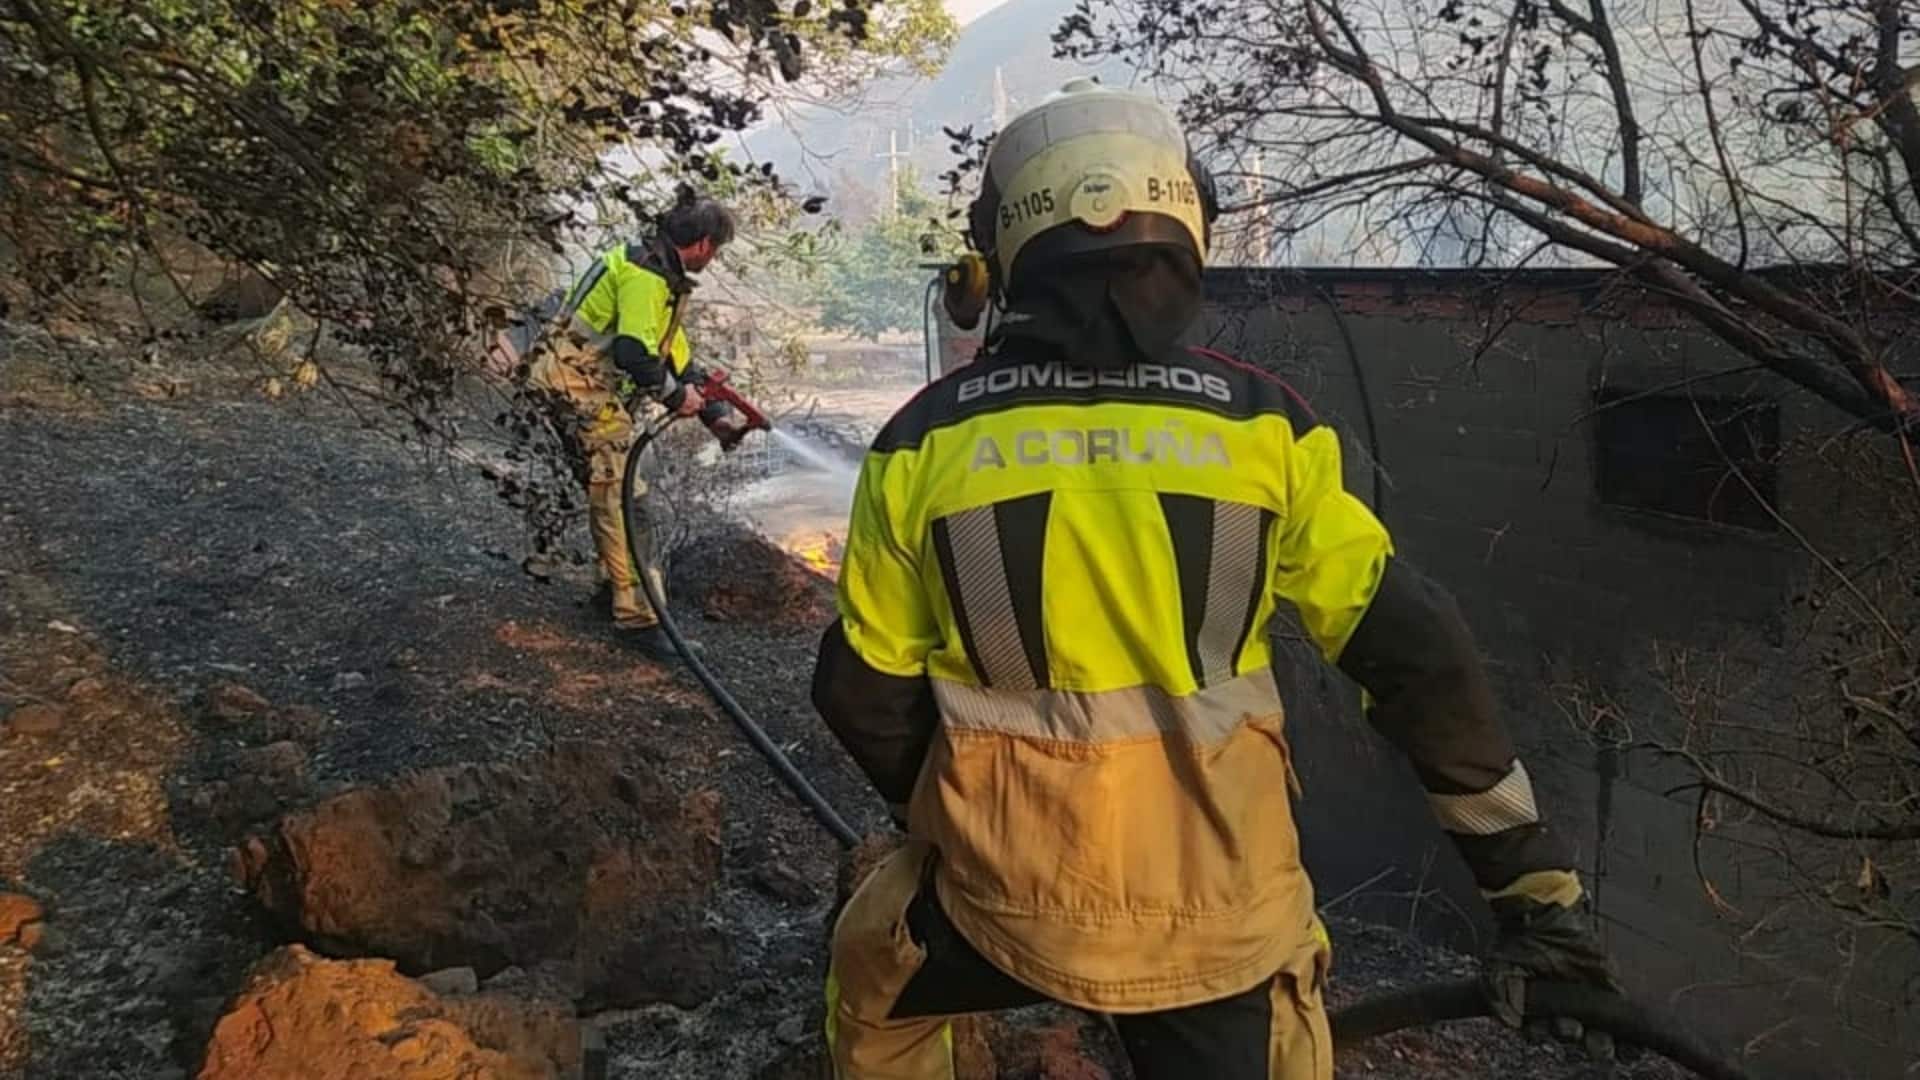 Bomberos de A Coruña actuando en un incendio forestal | CONCELLO DA CORUÑA